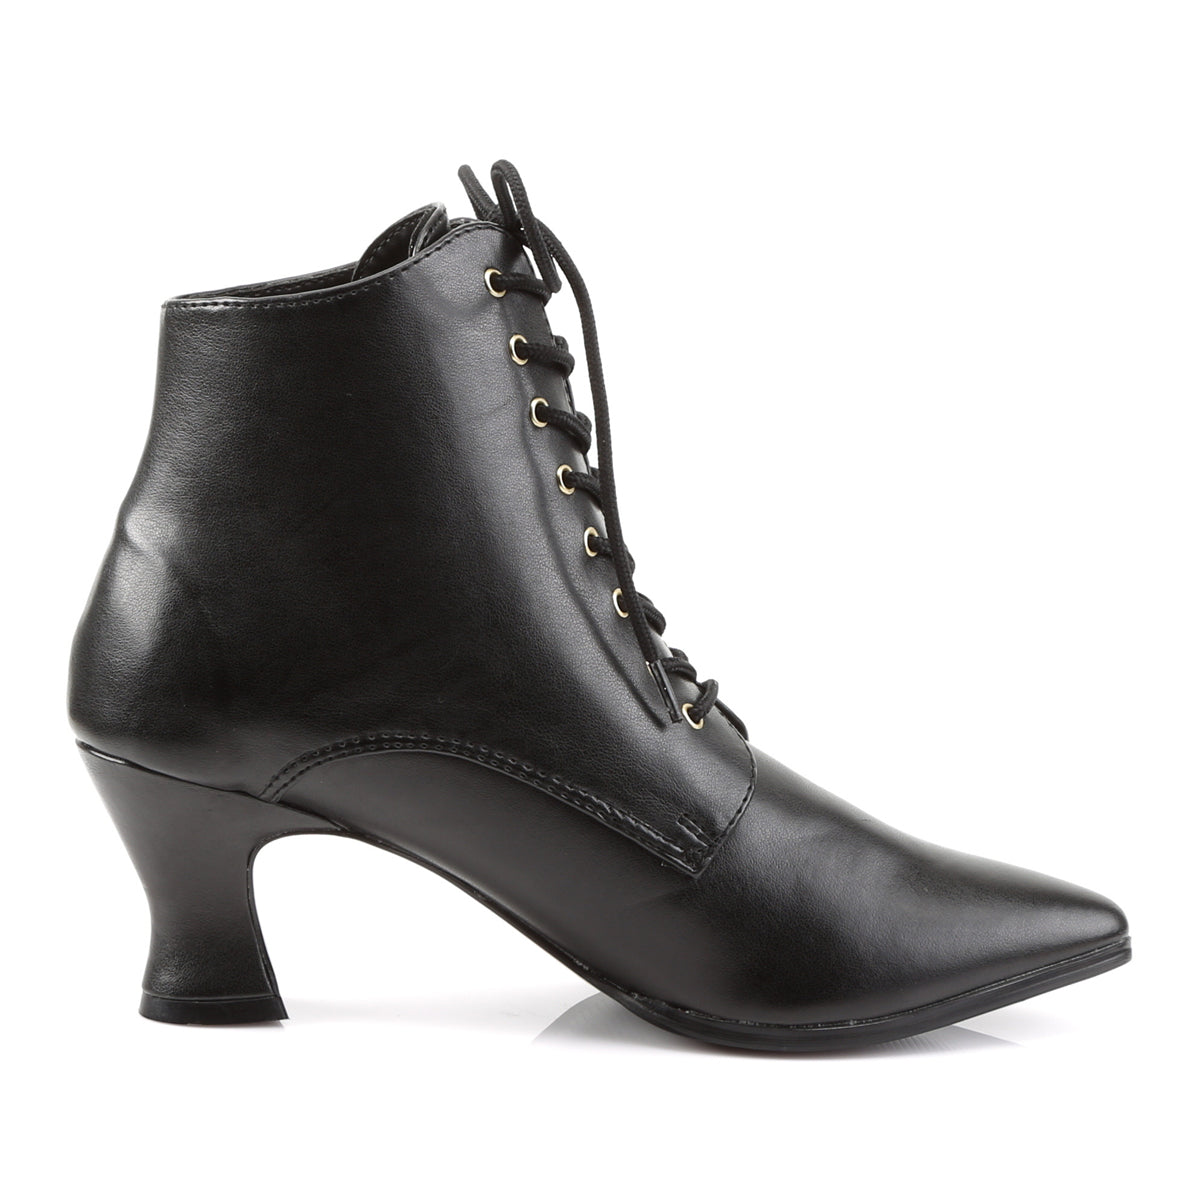 VICTORIAN-35 Funtasma Fantasy Black Pu Women's Boots [Fancy Dress Footwear]